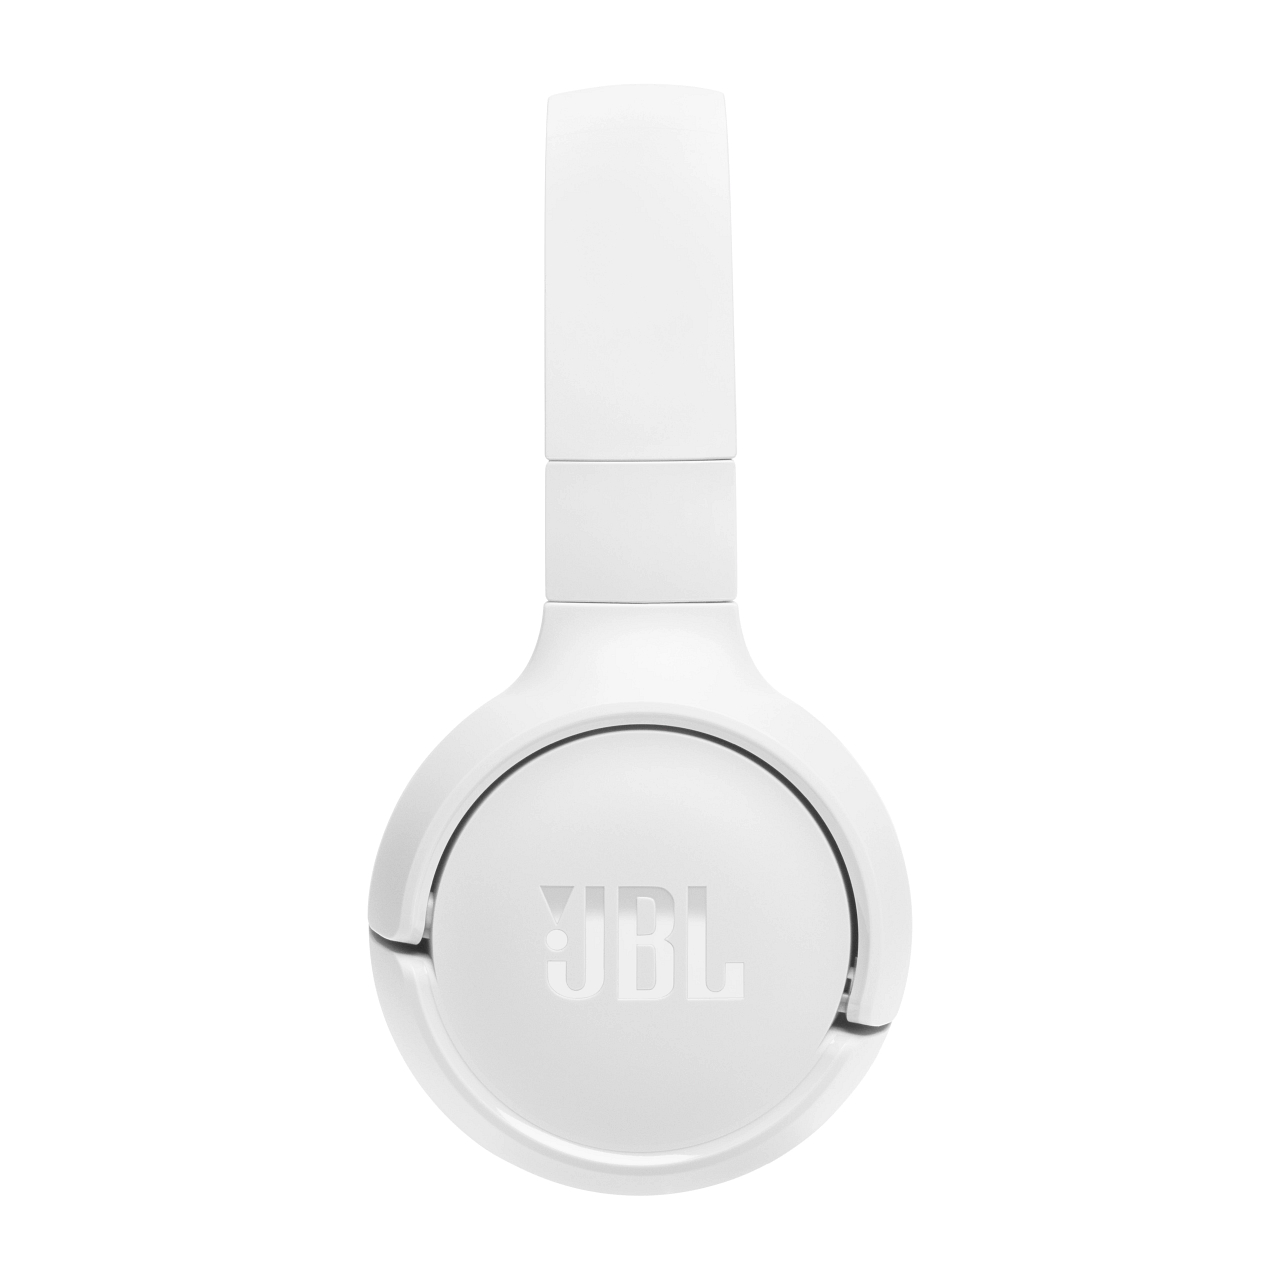 JBL Tune 520BT, Over-ear Kopfhörer Bluetooth Weiß